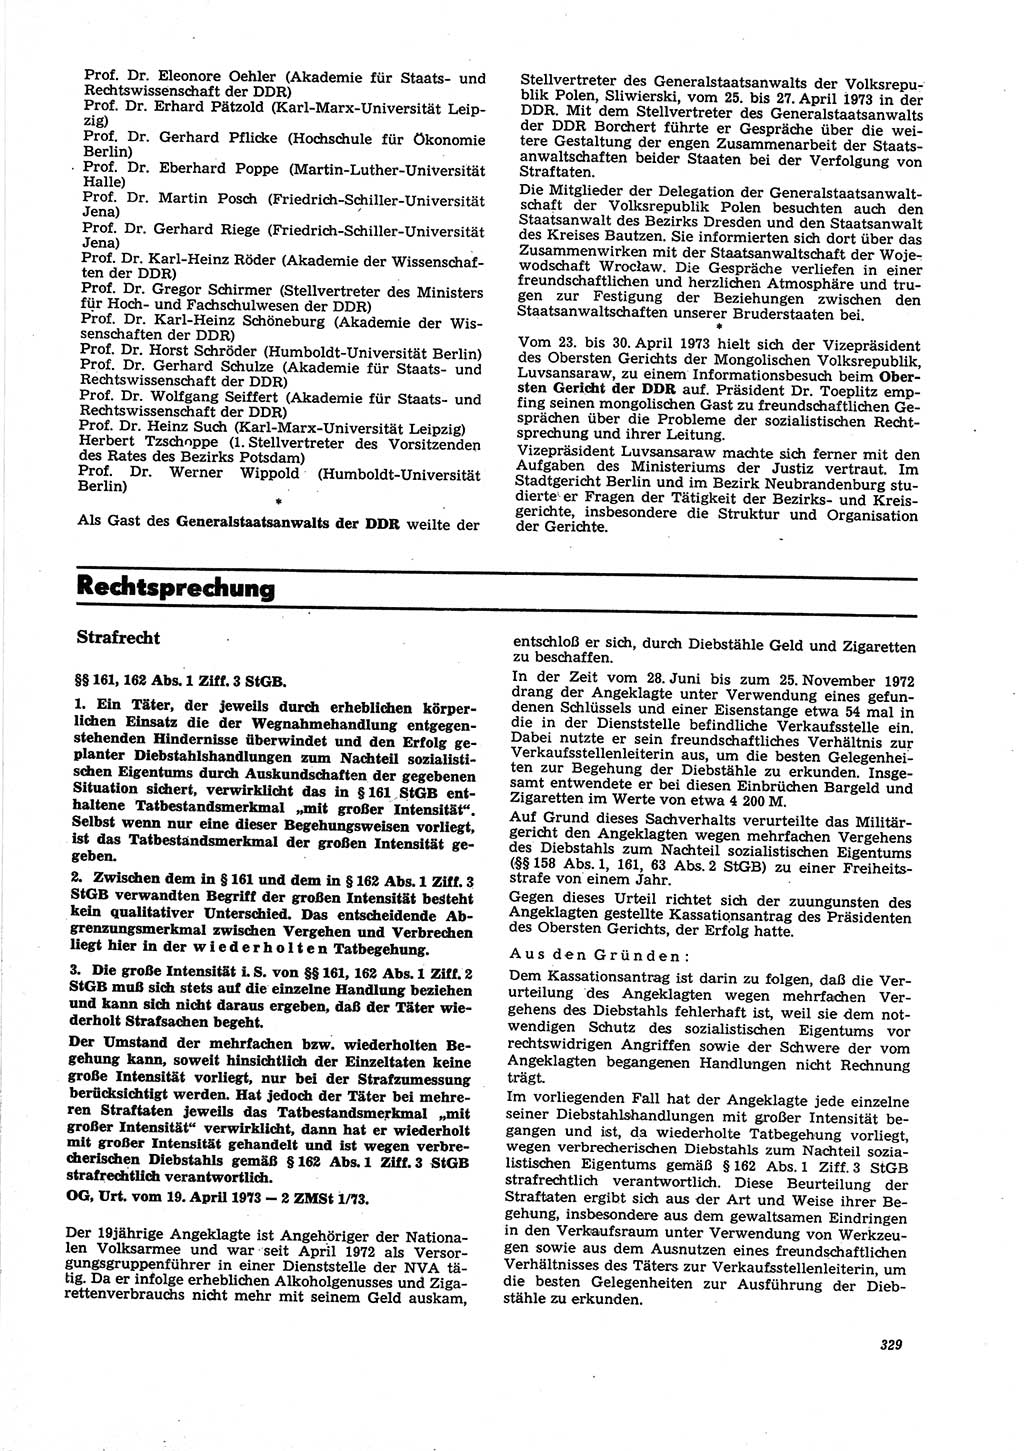 Neue Justiz (NJ), Zeitschrift für Recht und Rechtswissenschaft [Deutsche Demokratische Republik (DDR)], 27. Jahrgang 1973, Seite 329 (NJ DDR 1973, S. 329)